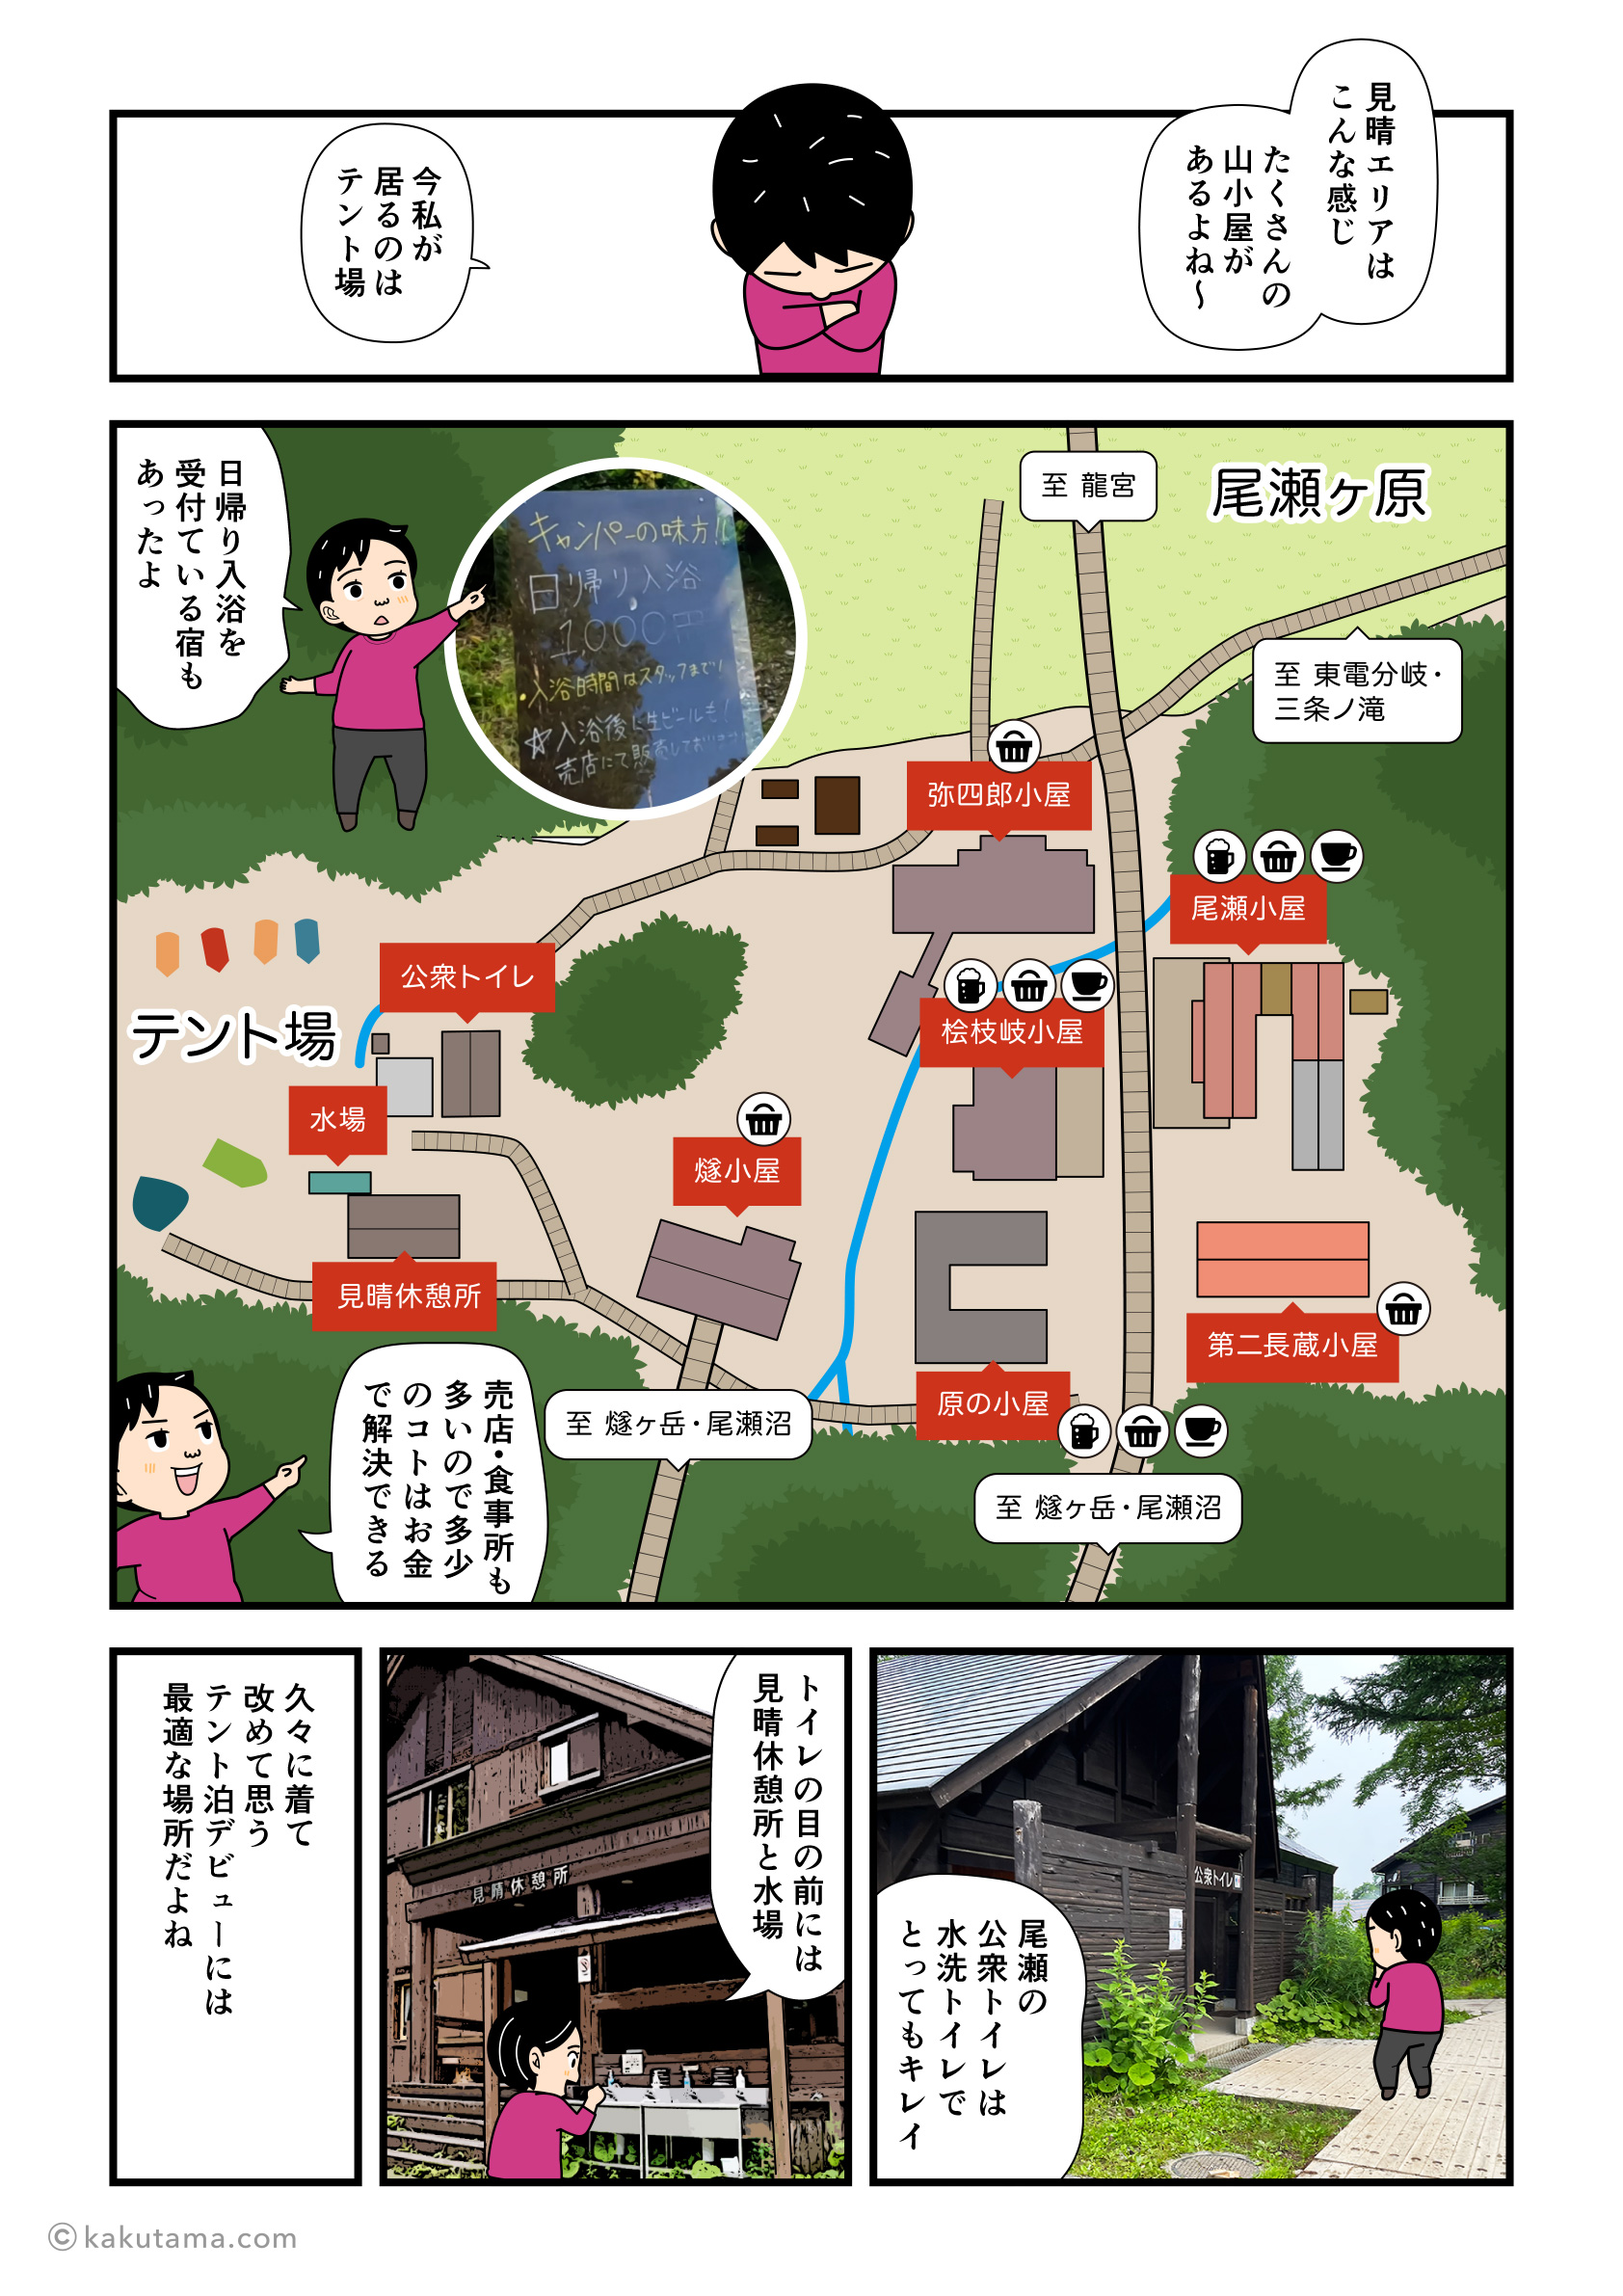 尾瀬・見晴エリアのイラストマップとその詳細を描いたマンガ